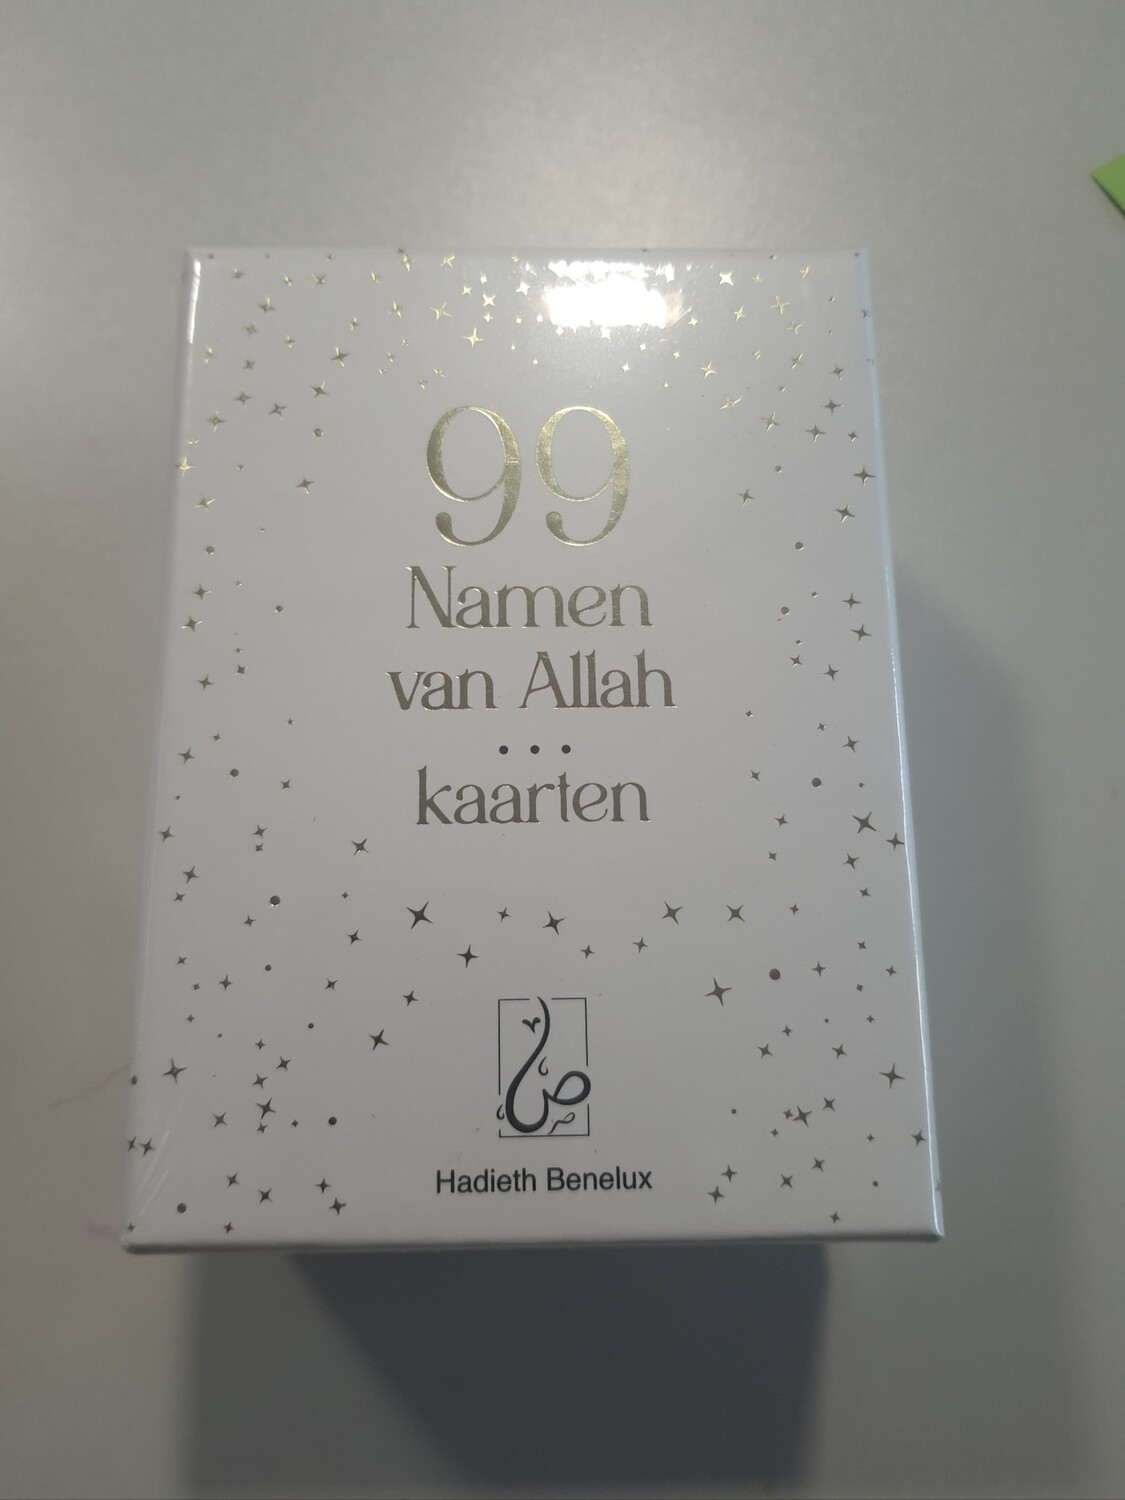 99 namen van Allah kaarten wit